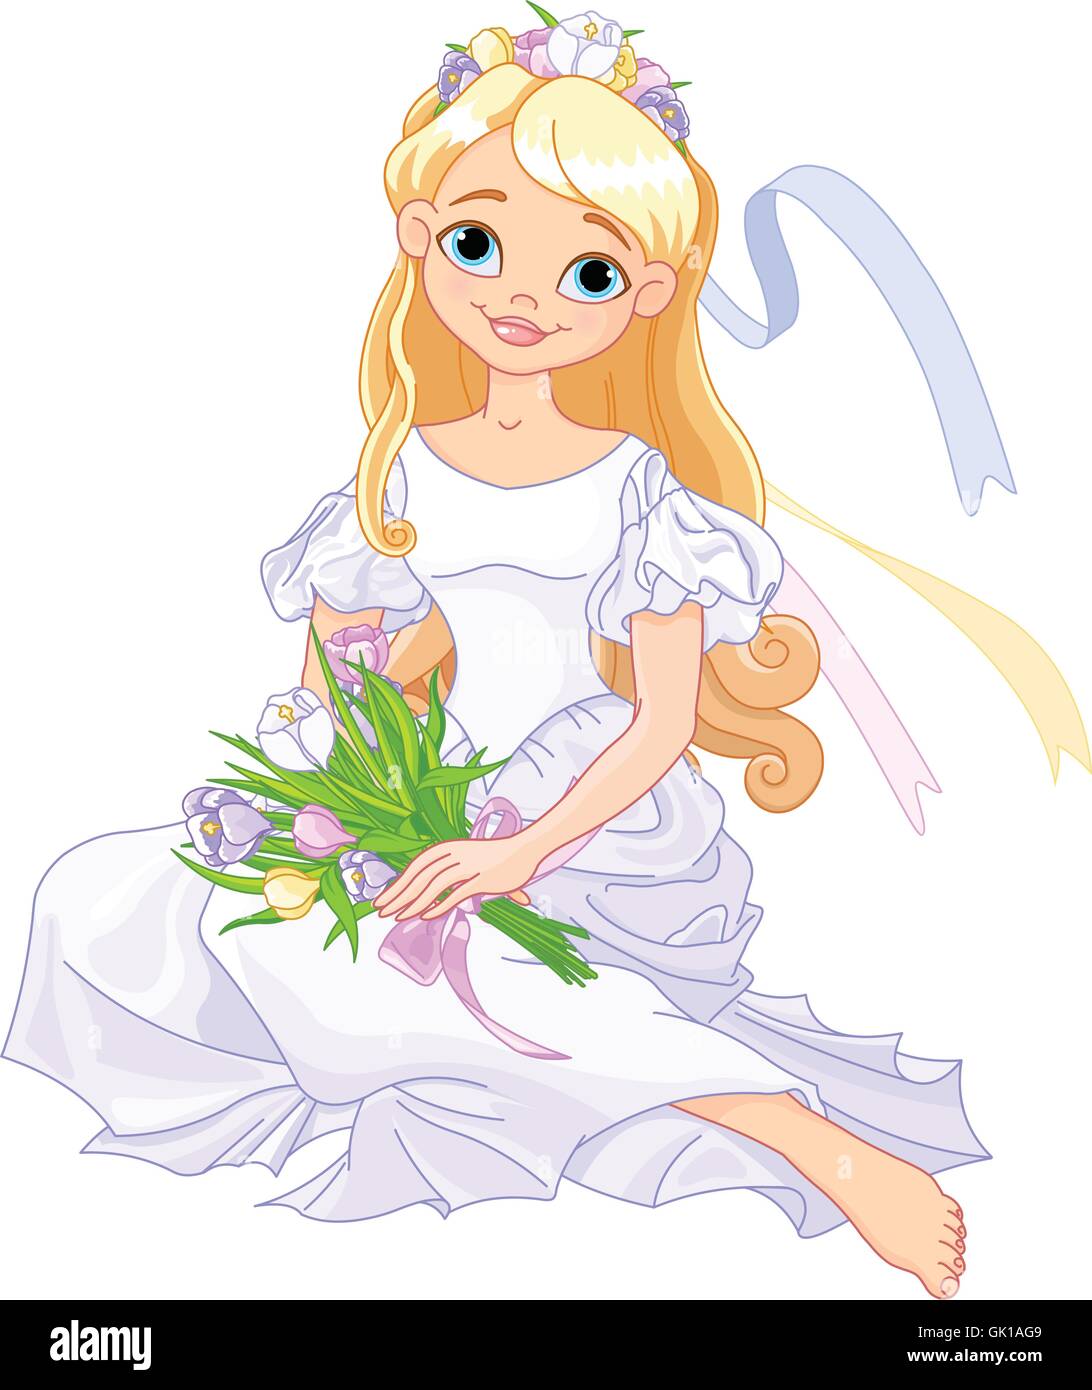 Девочка мультяшная в белом платье